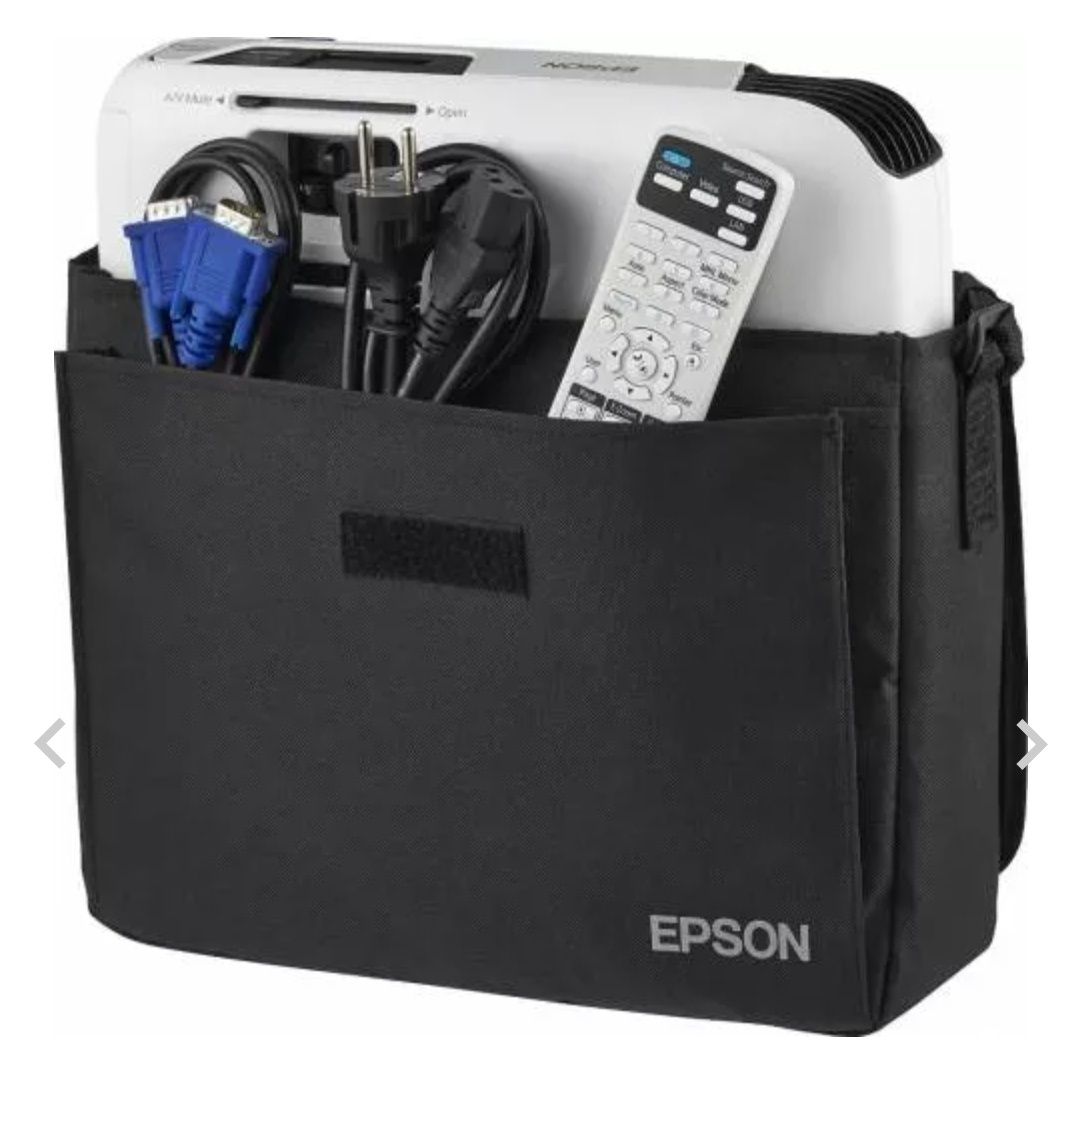 Videoproiector Epson EB-S04 cc10 h utilizat, .Cadou Chrome cast